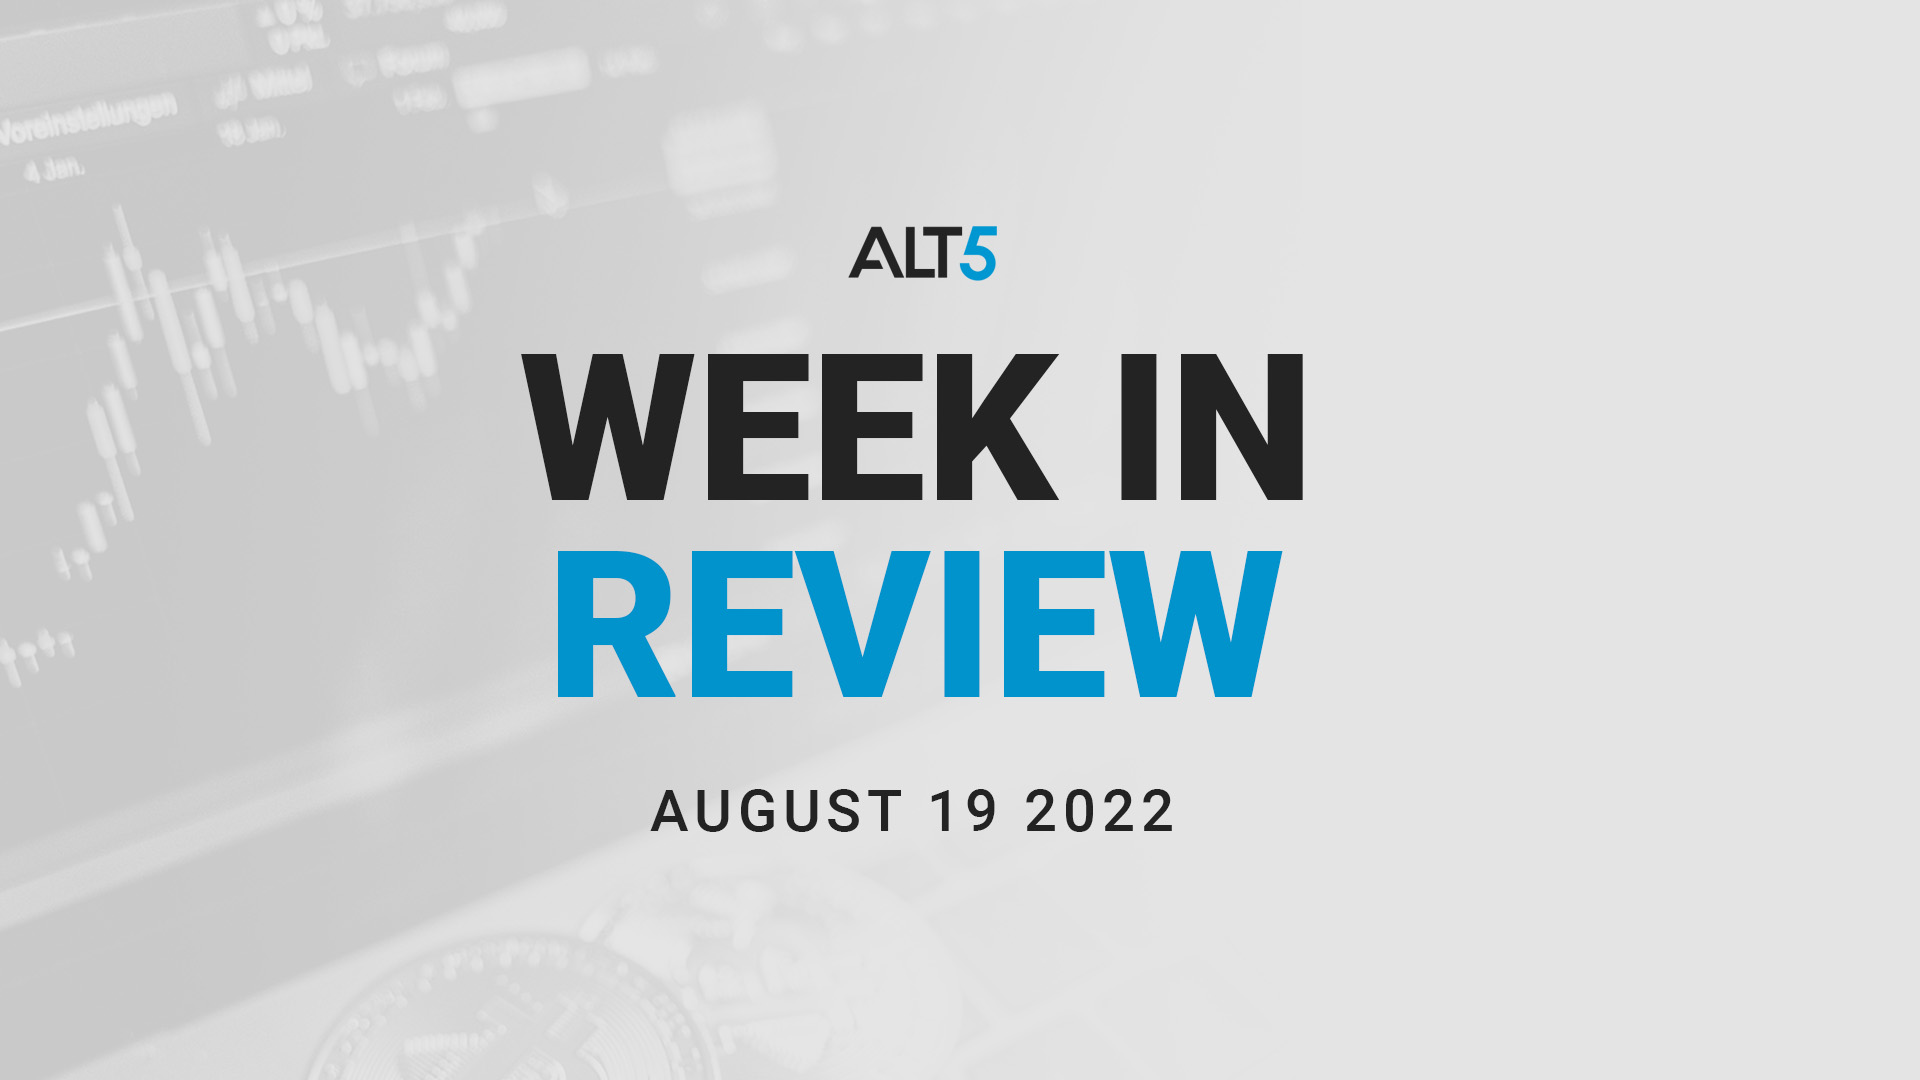 Week in review: August 19 2022